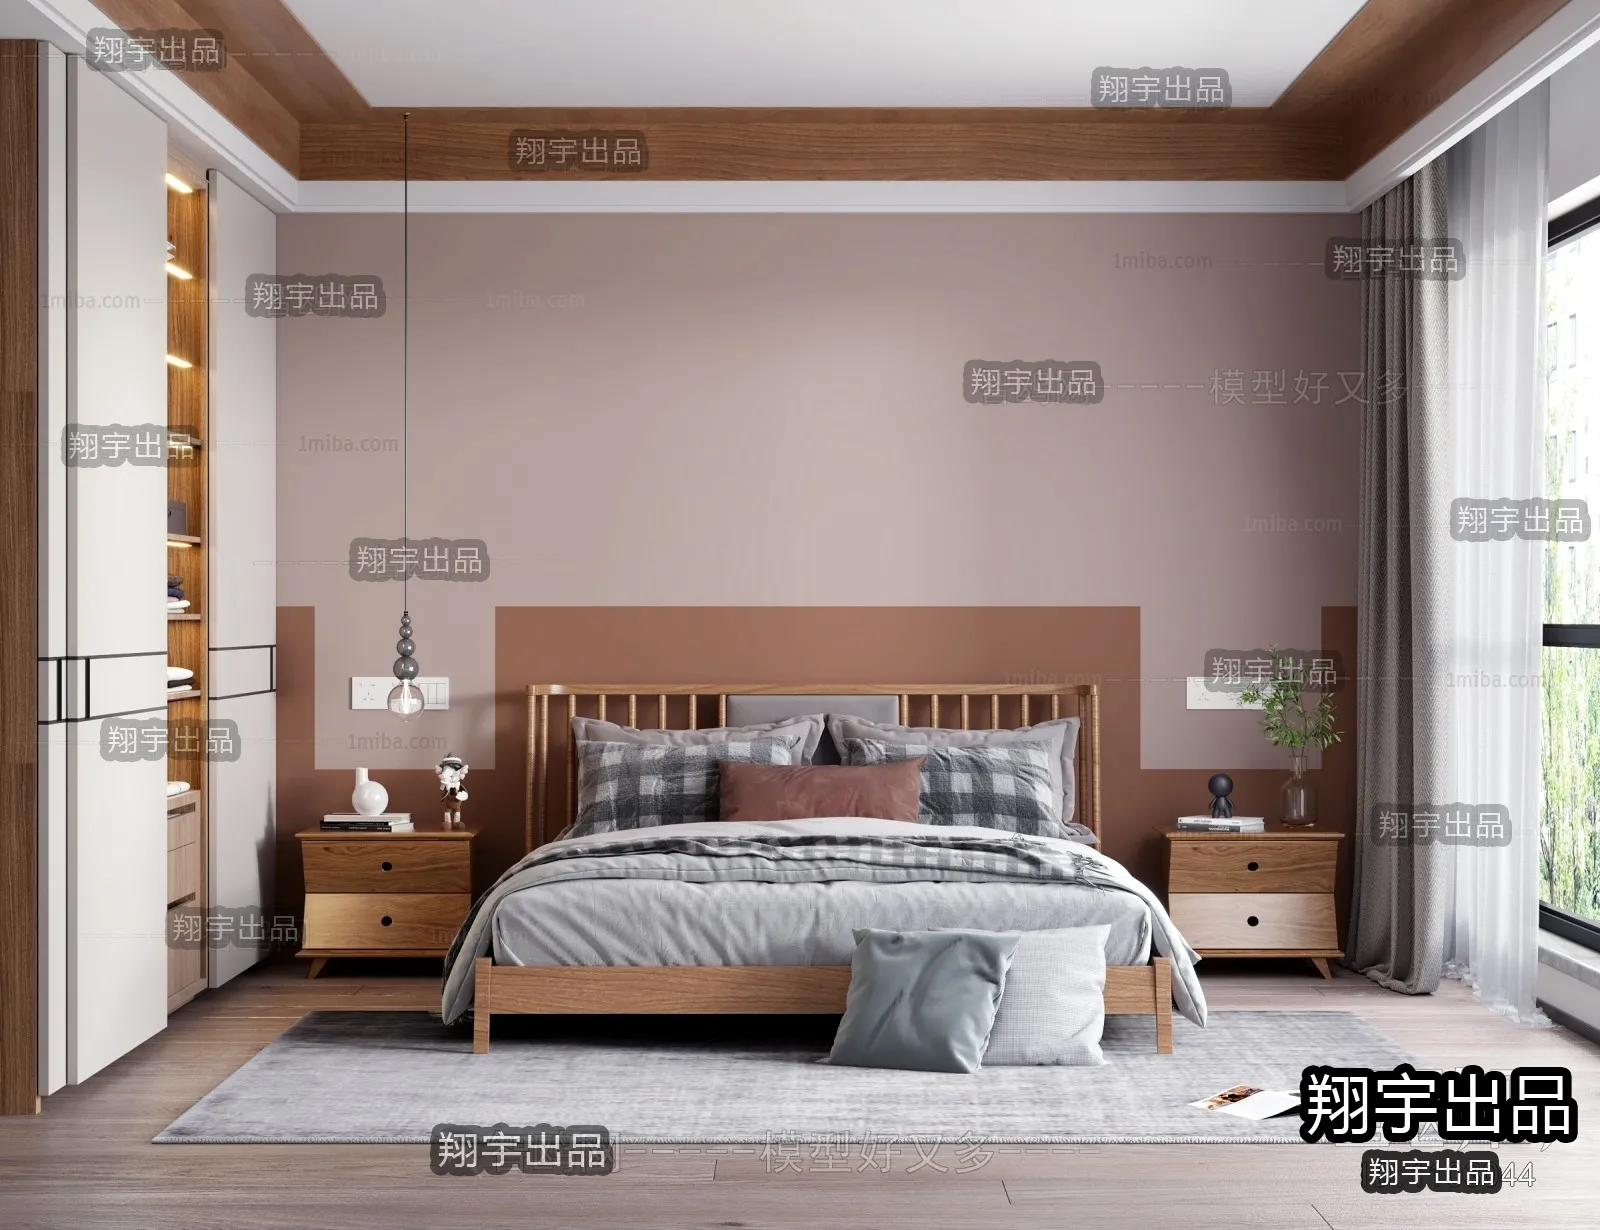 Bedroom – Scandinavian architecture – 014